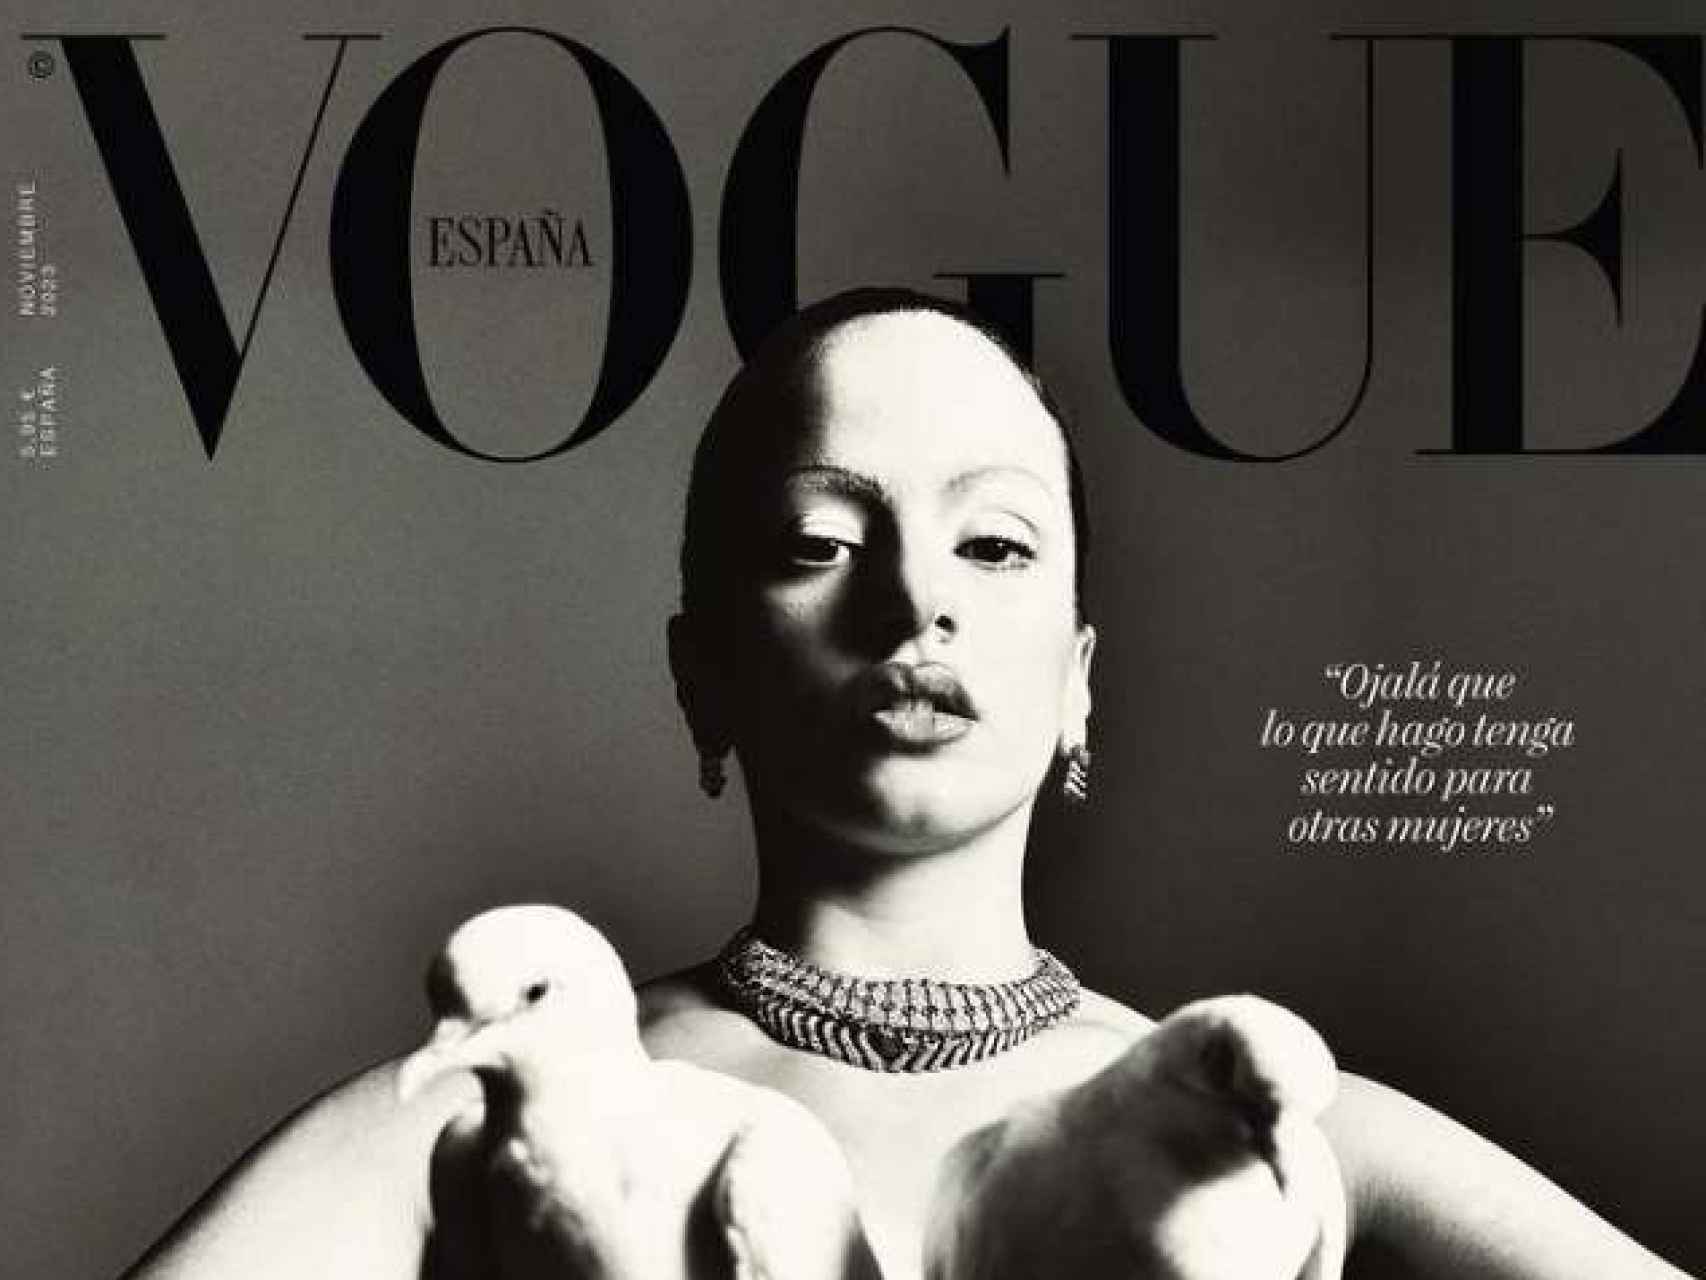 La portada de Rosalía para Vogue.